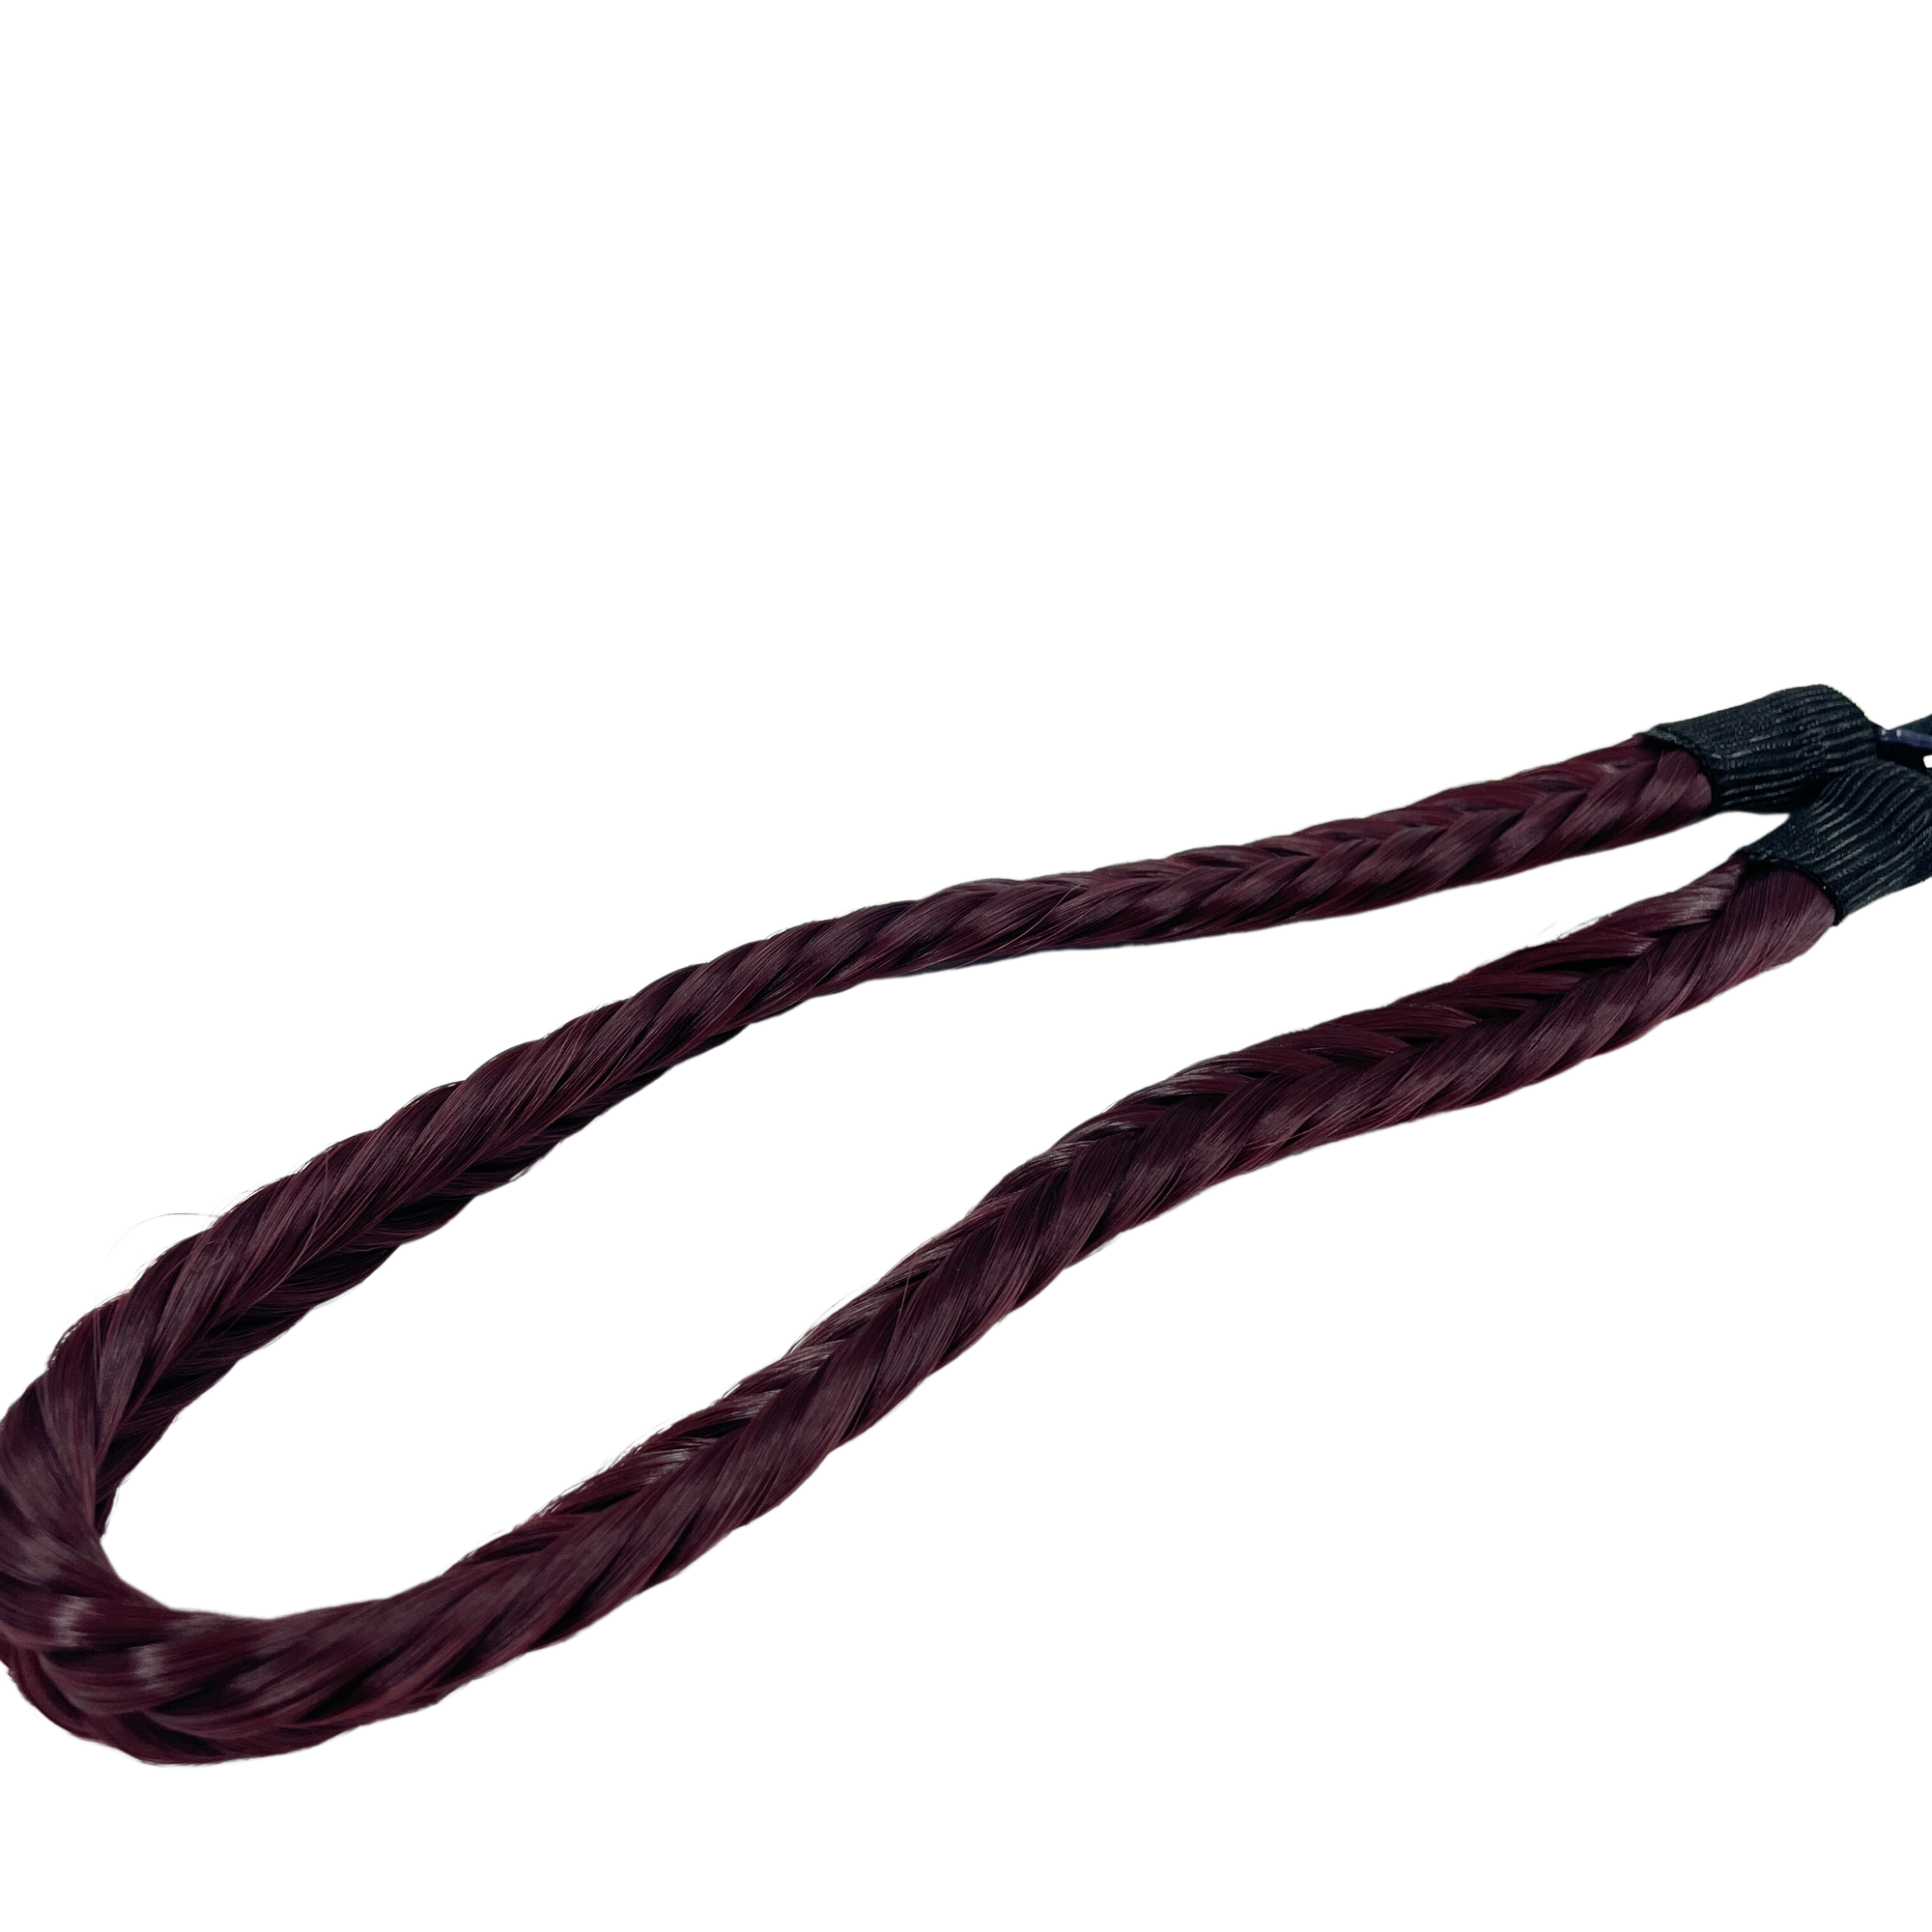 image of hair rehab london plait braid fishtail headband hairband in shade burgundy